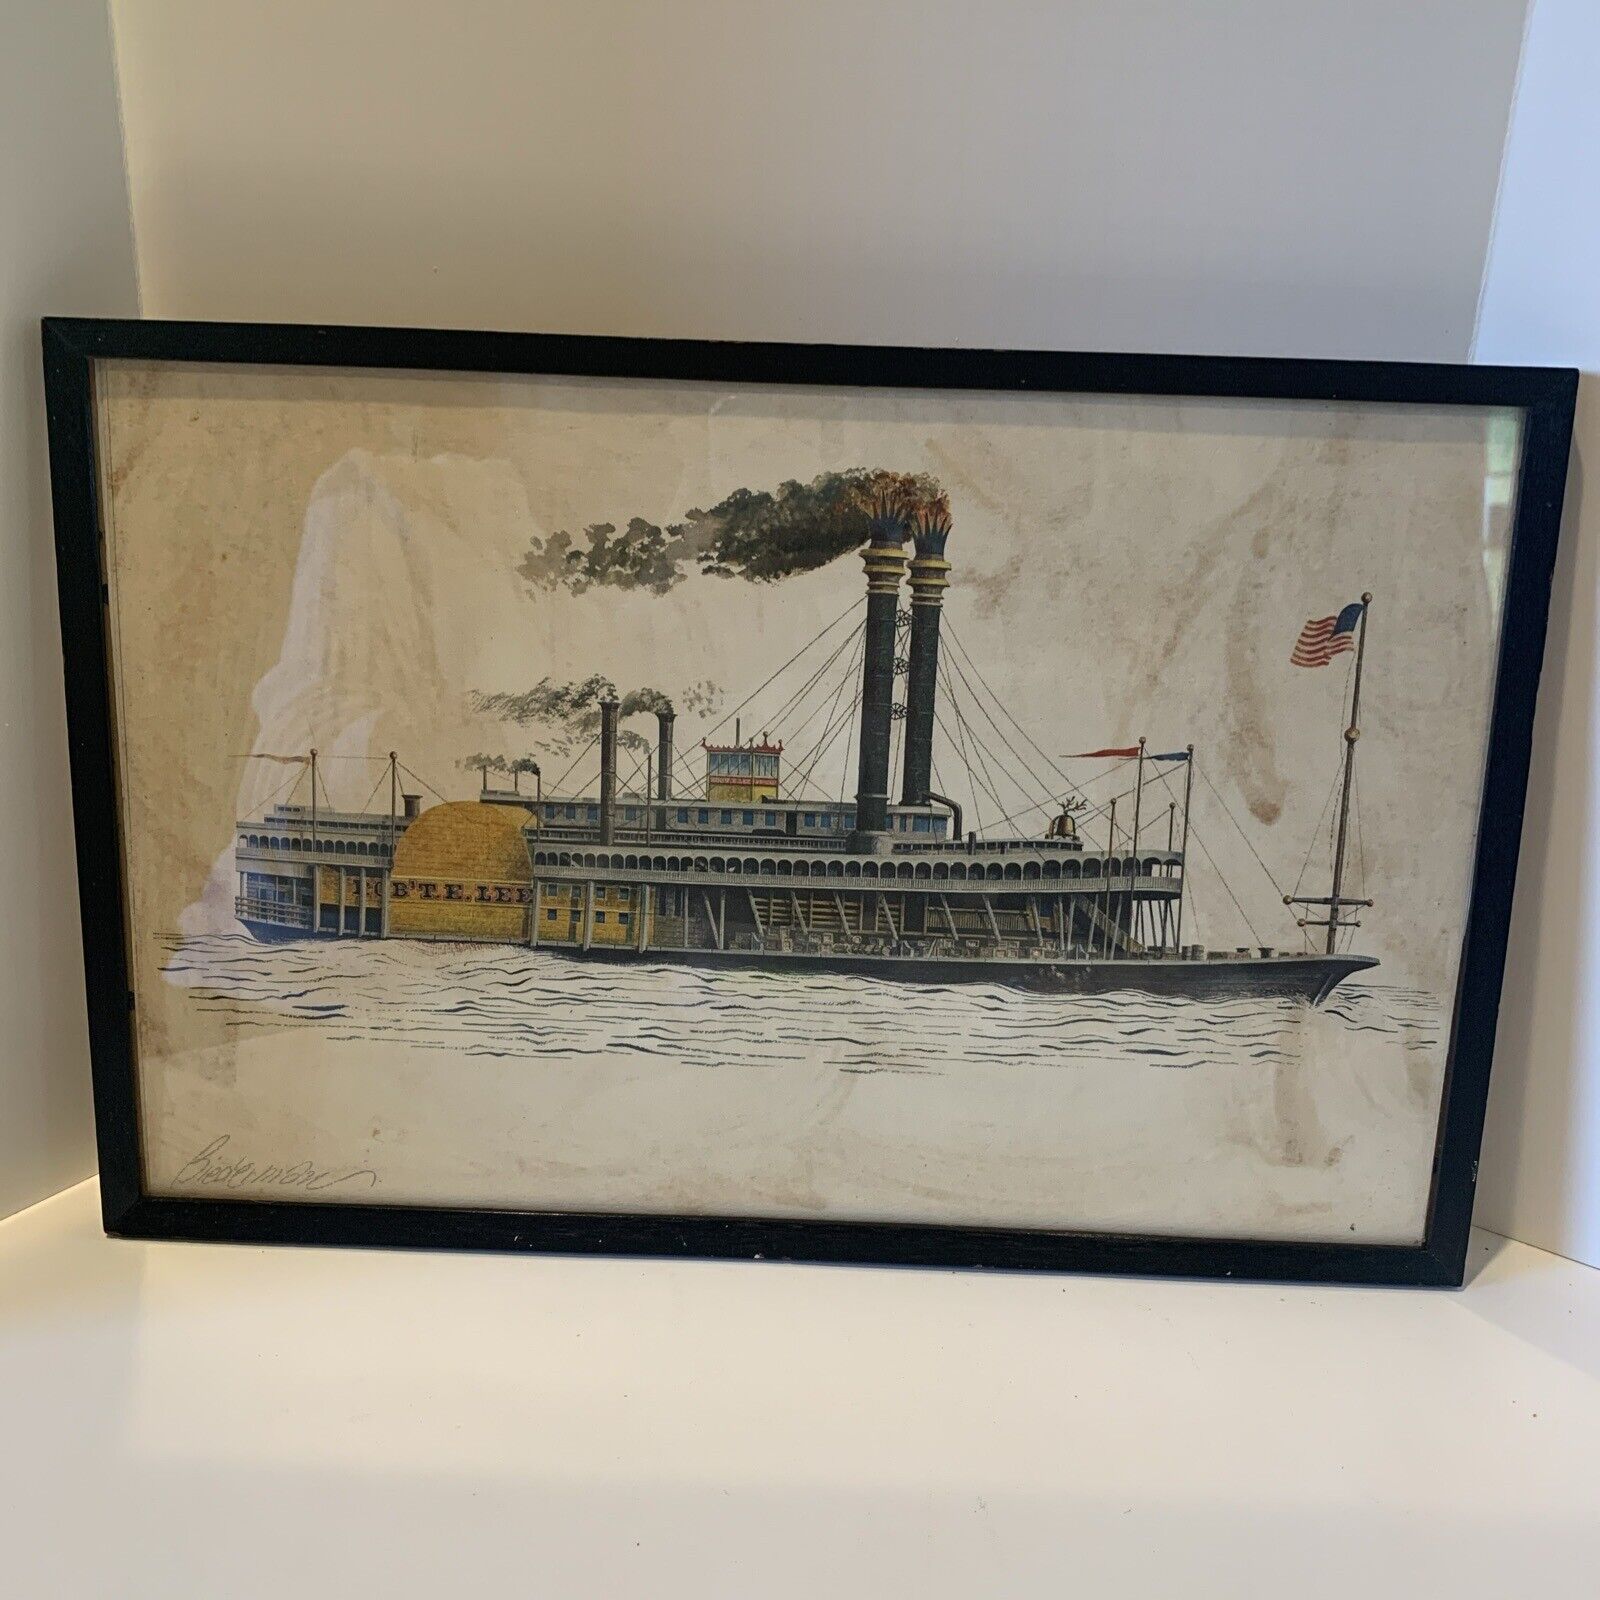 Vintage Framed Robert E. Lee Steamboat 1866 Signed Biederman. Frame Is 10x15”